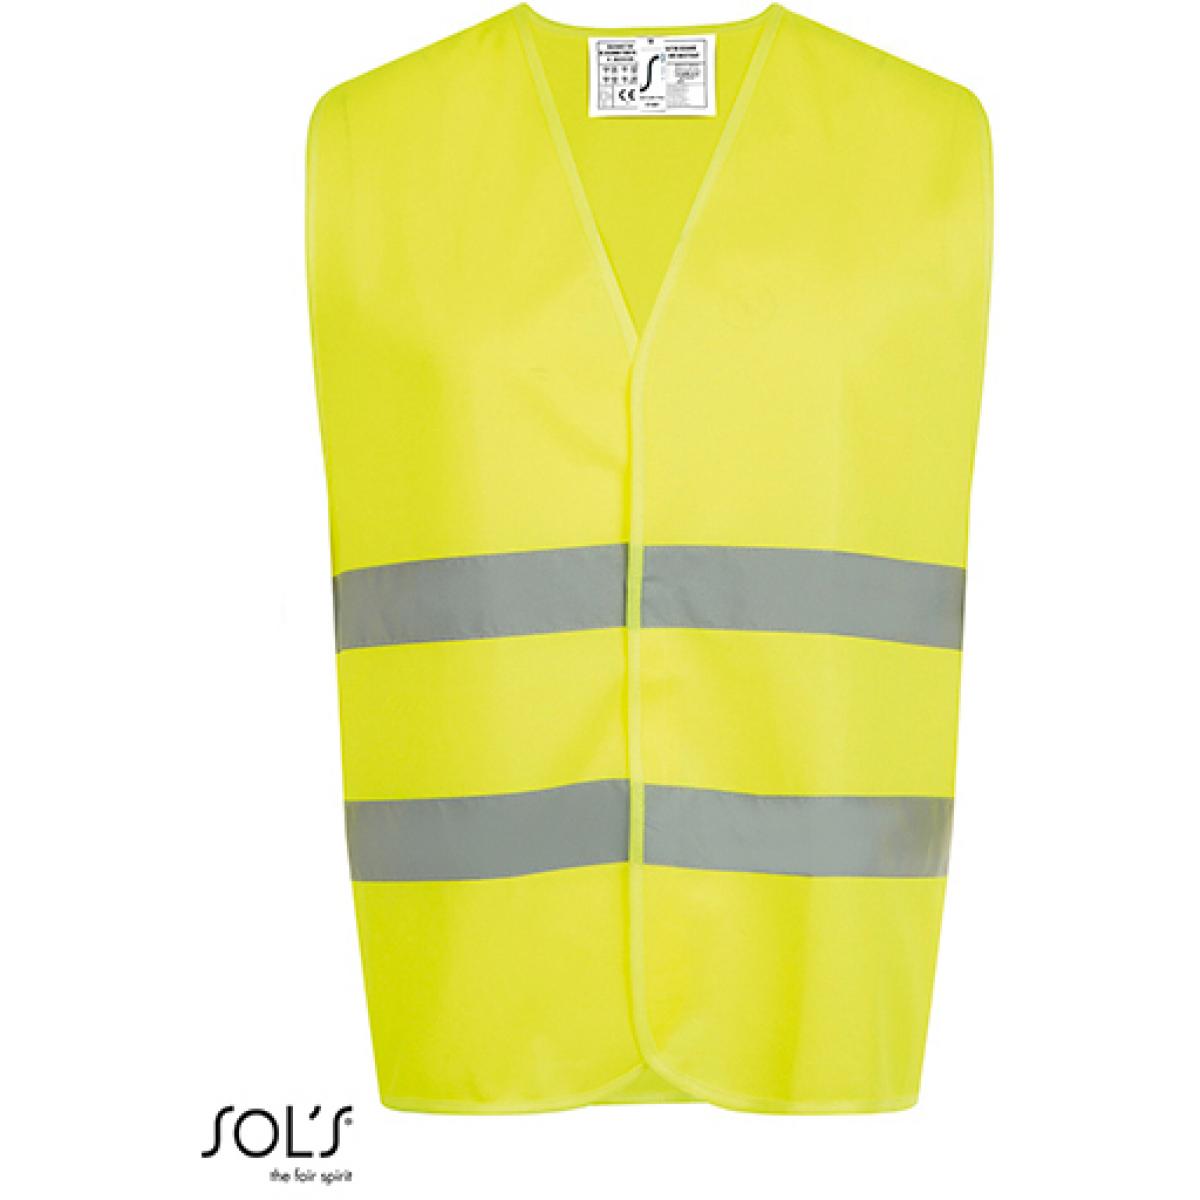 Hersteller: SOLs ProWear Herstellernummer: 01691 Artikelbezeichnung: Herren Secure Pro Unisey Safety Vest Farbe: Neon Yellow